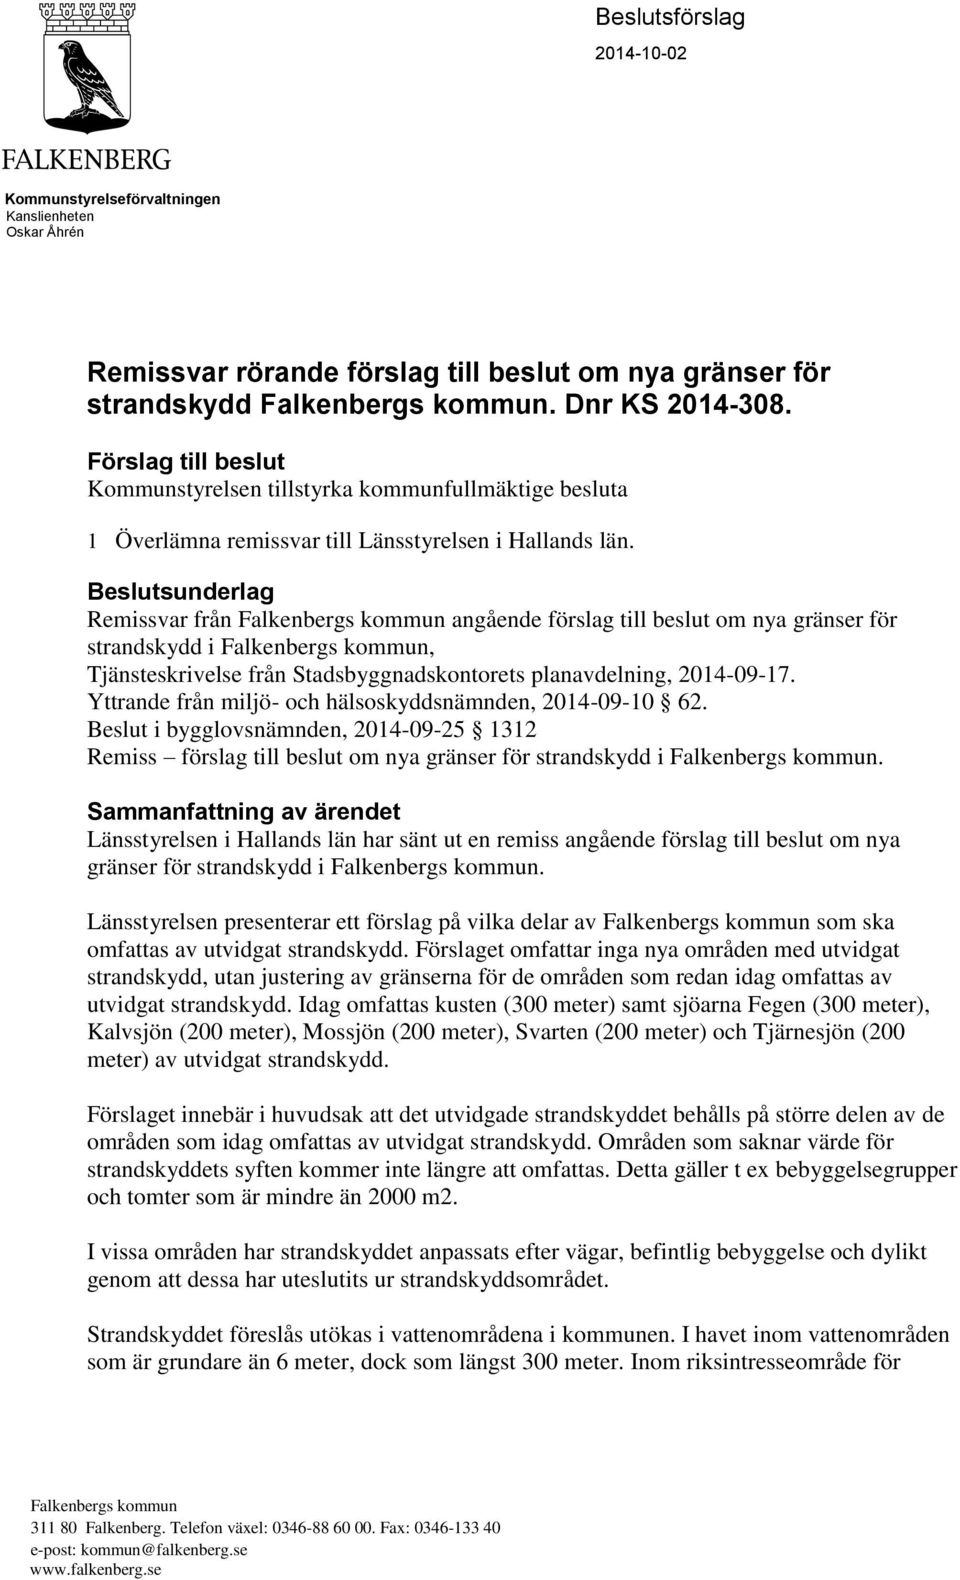 Beslutsunderlag Remissvar från Falkenbergs kommun angående förslag till beslut om nya gränser för strandskydd i Falkenbergs kommun, Tjänsteskrivelse från Stadsbyggnadskontorets planavdelning,